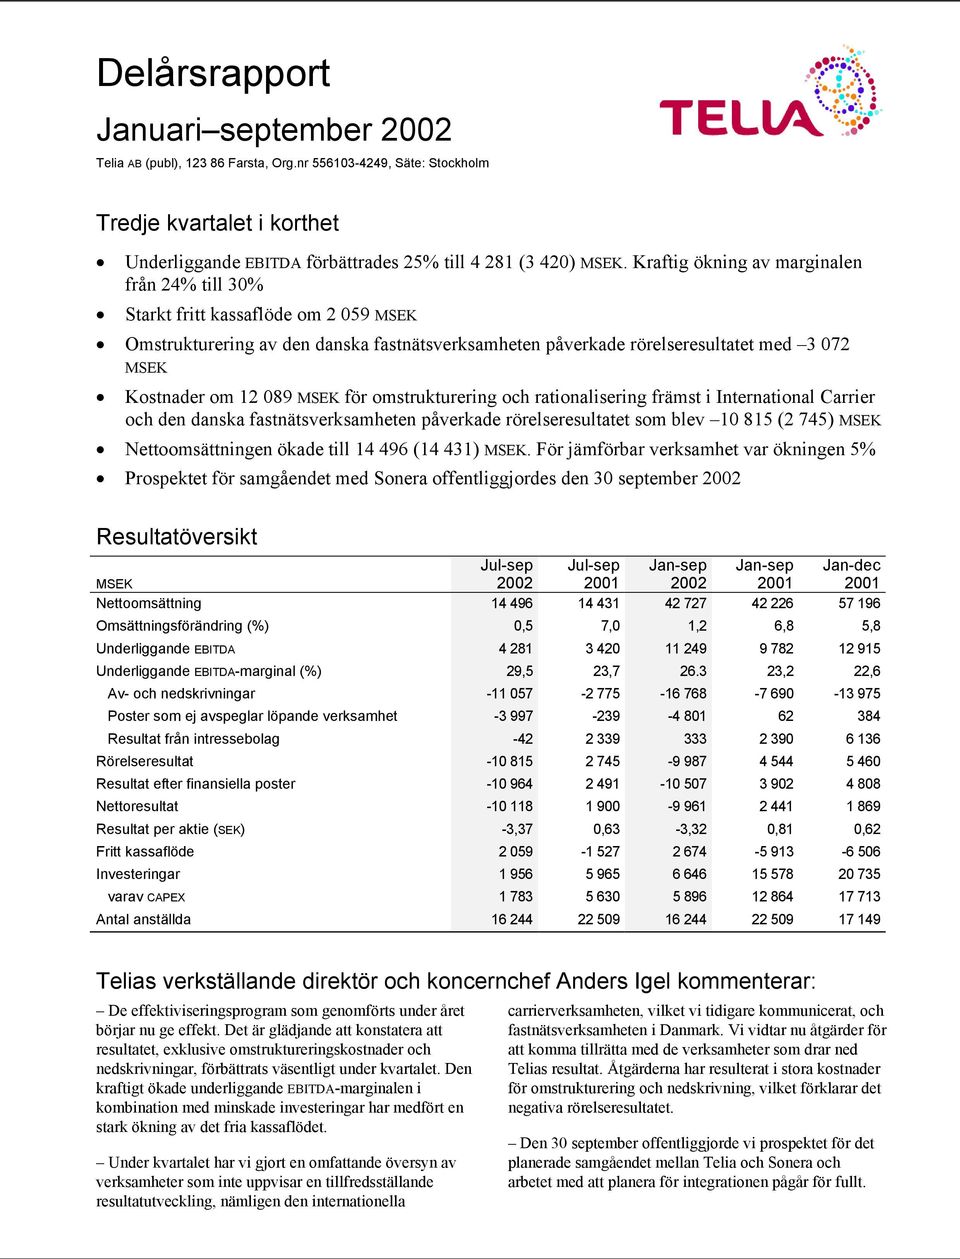 omstrukturering och rationalisering främst i International Carrier och den danska fastnätsverksamheten påverkade rörelseresultatet som blev 10 815 (2 745) Nettoomsättningen ökade till 14 496 (14 431).